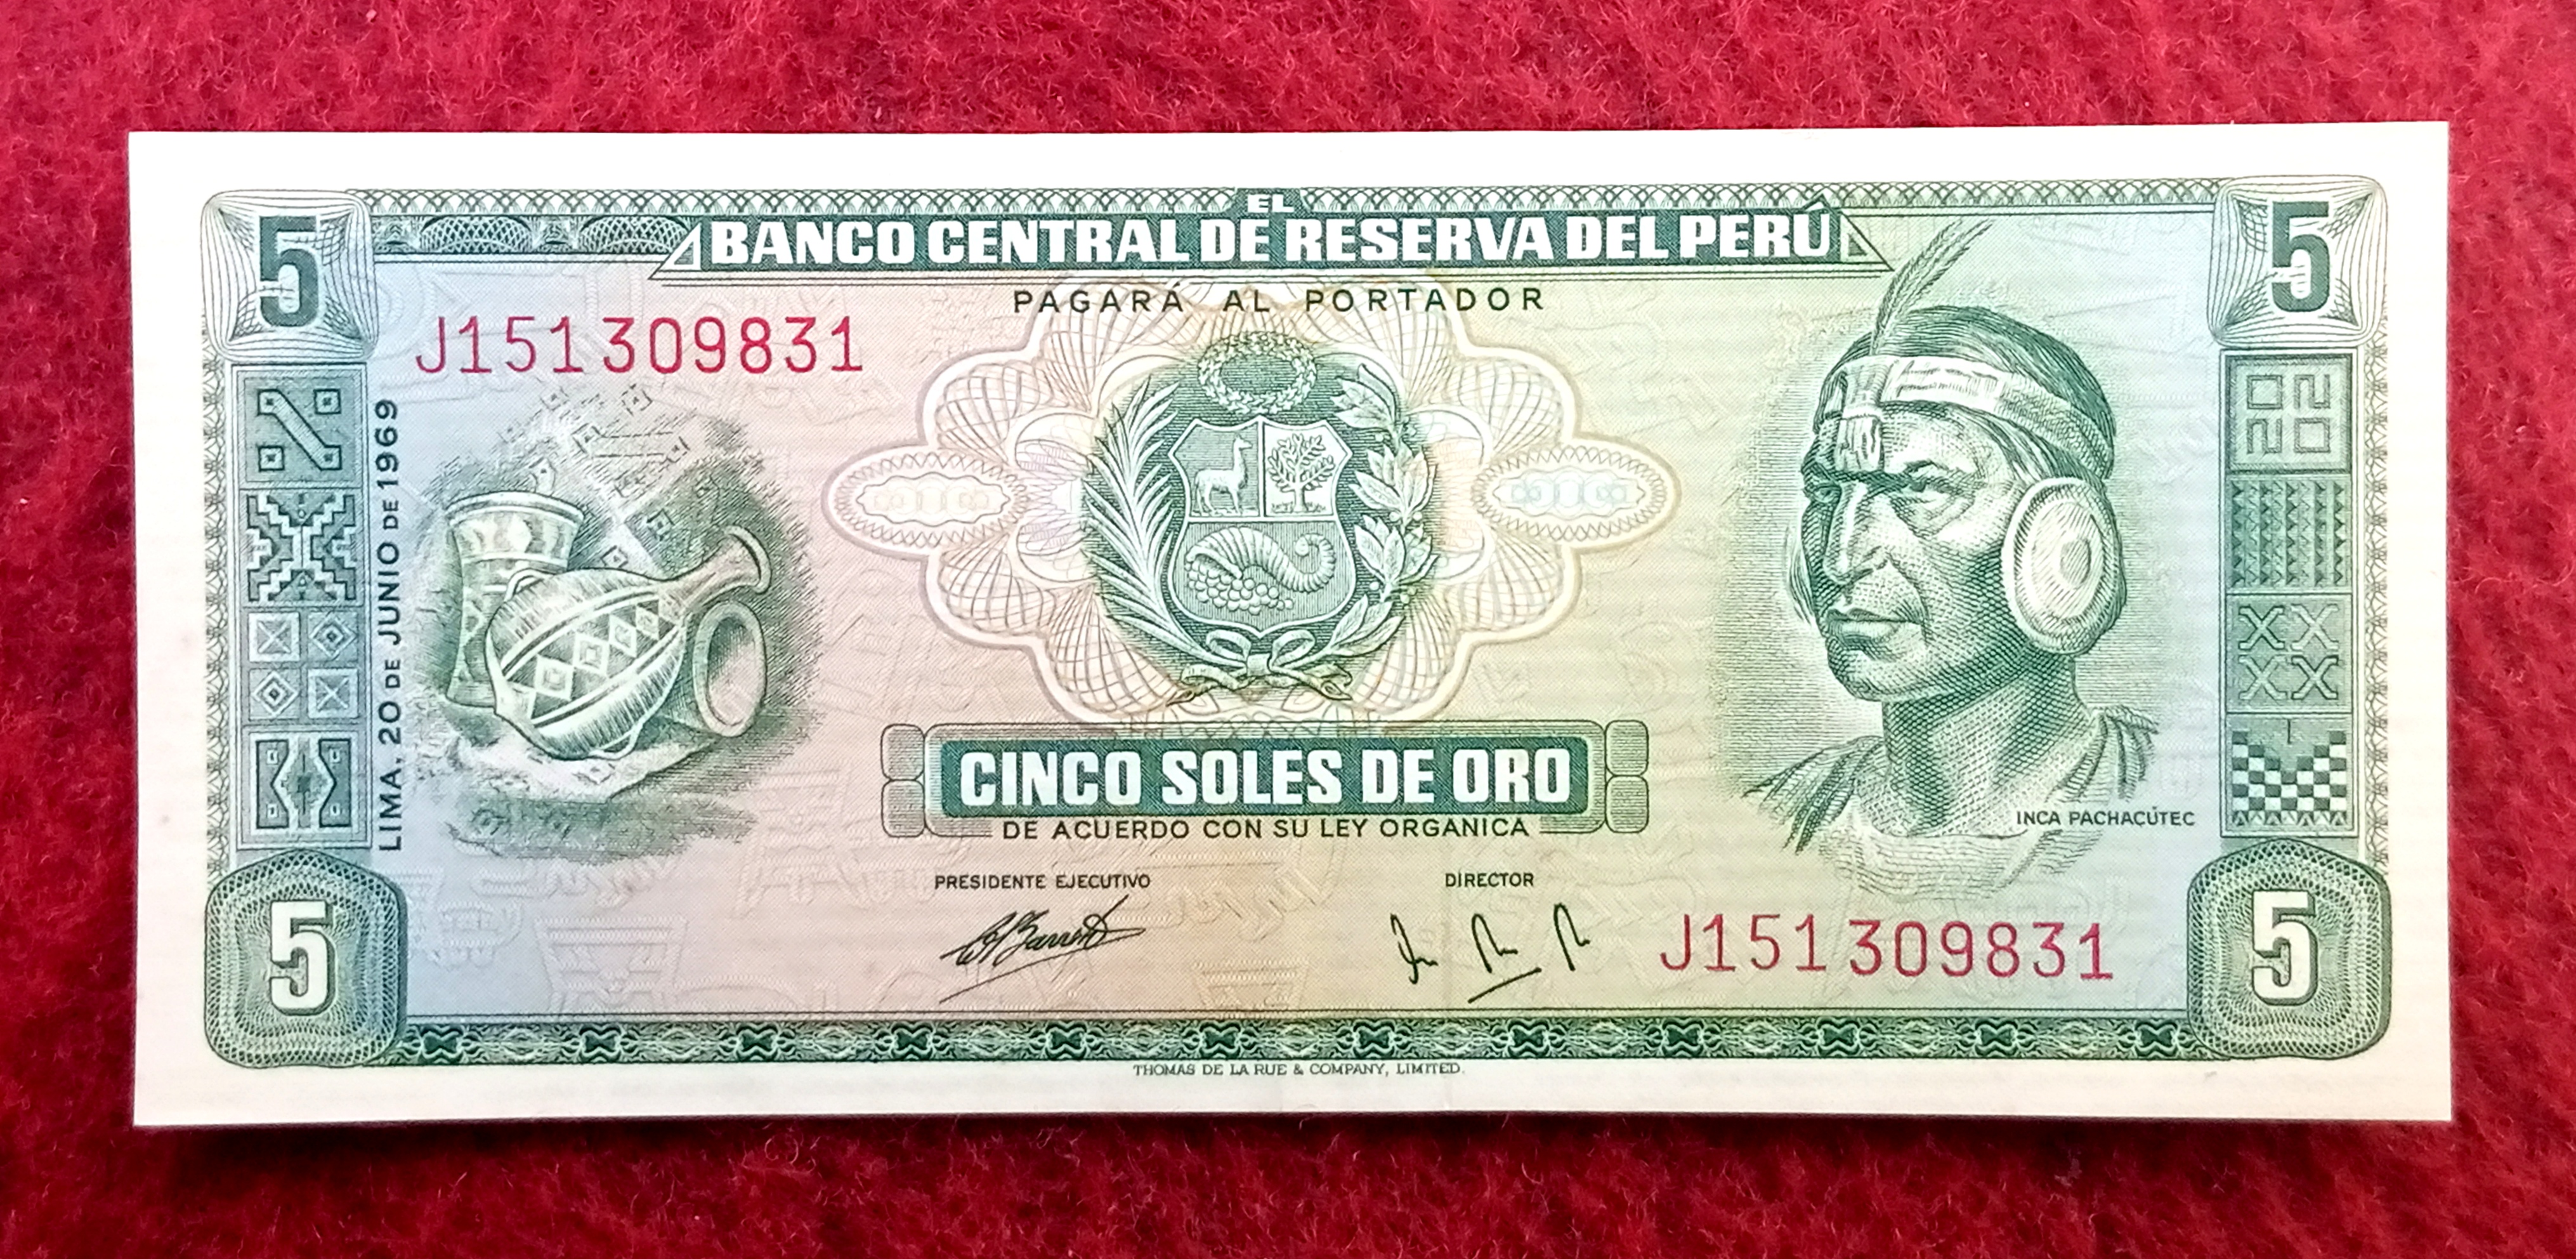 Peru 5 Soles de Oro Inca Pachacutec Banknote